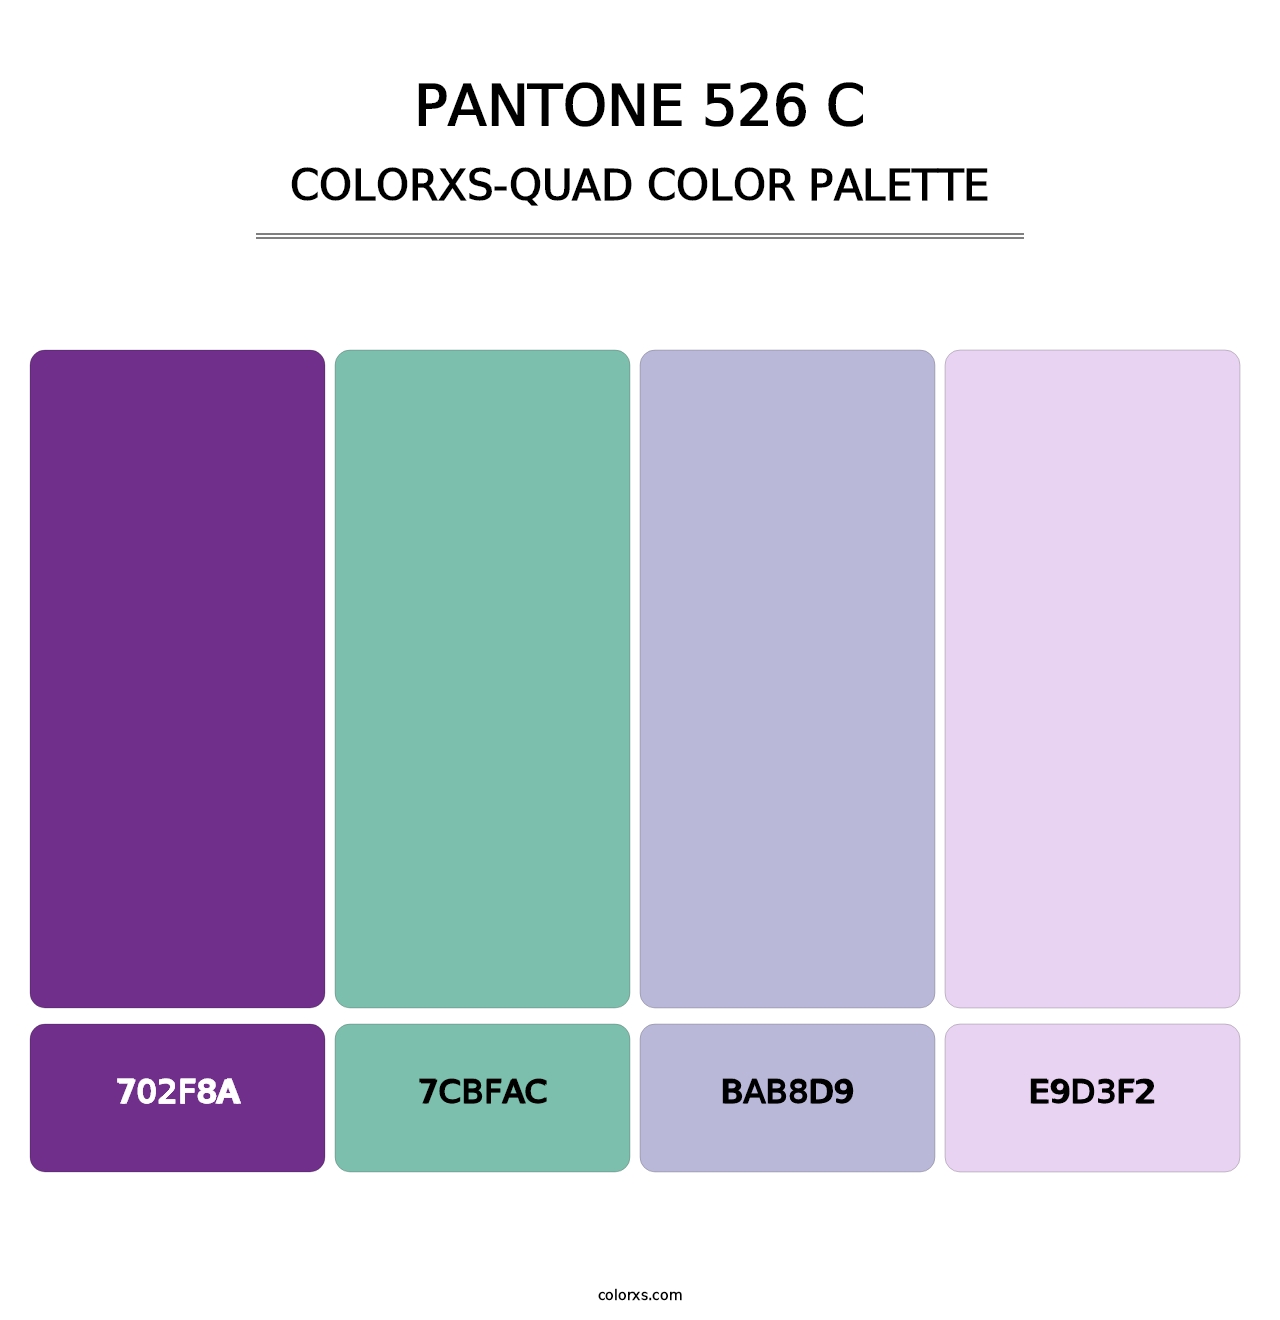 PANTONE 526 C - Colorxs Quad Palette